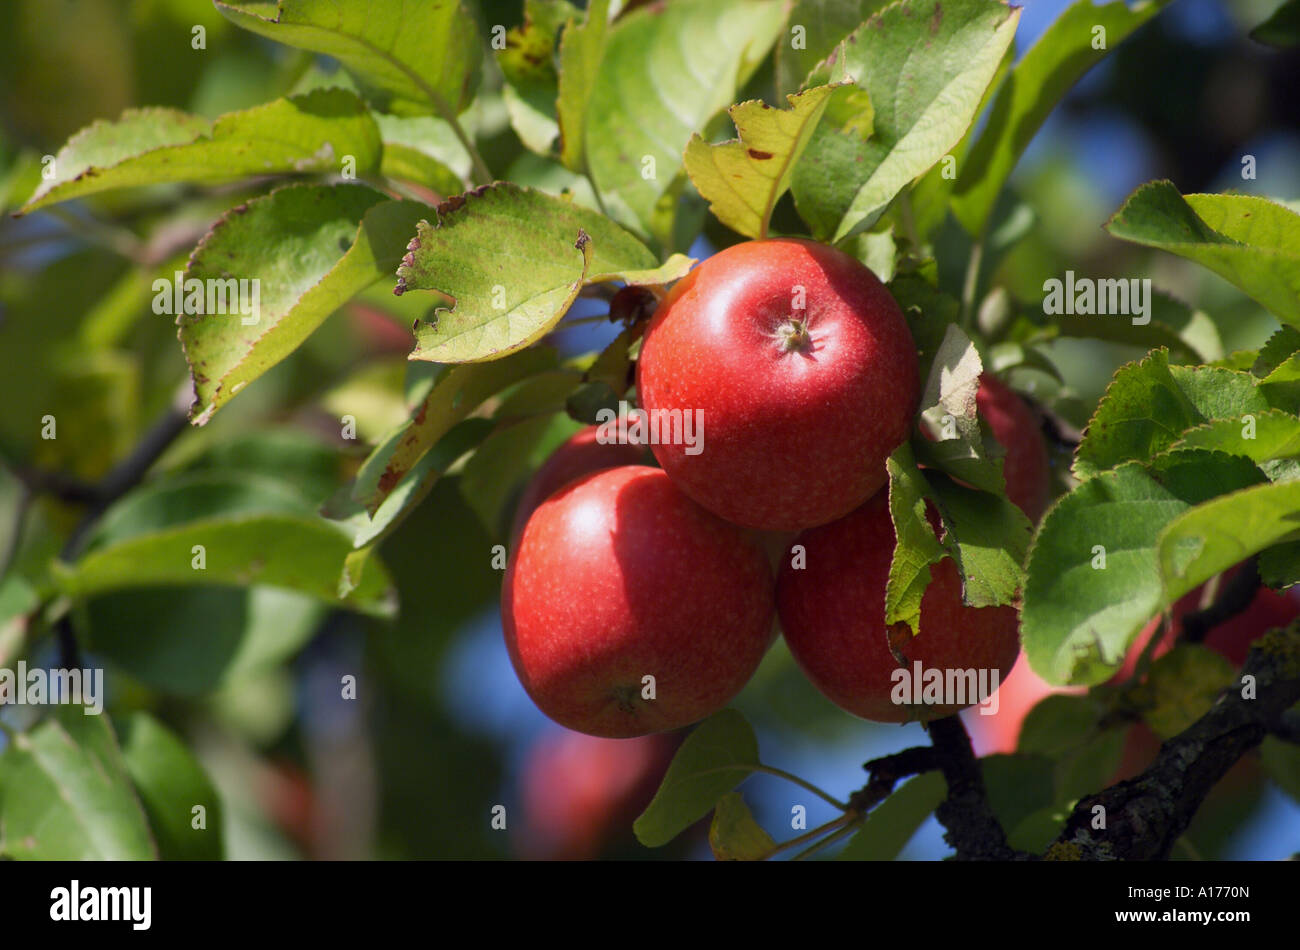 Apple on an apple tree Stock Photo